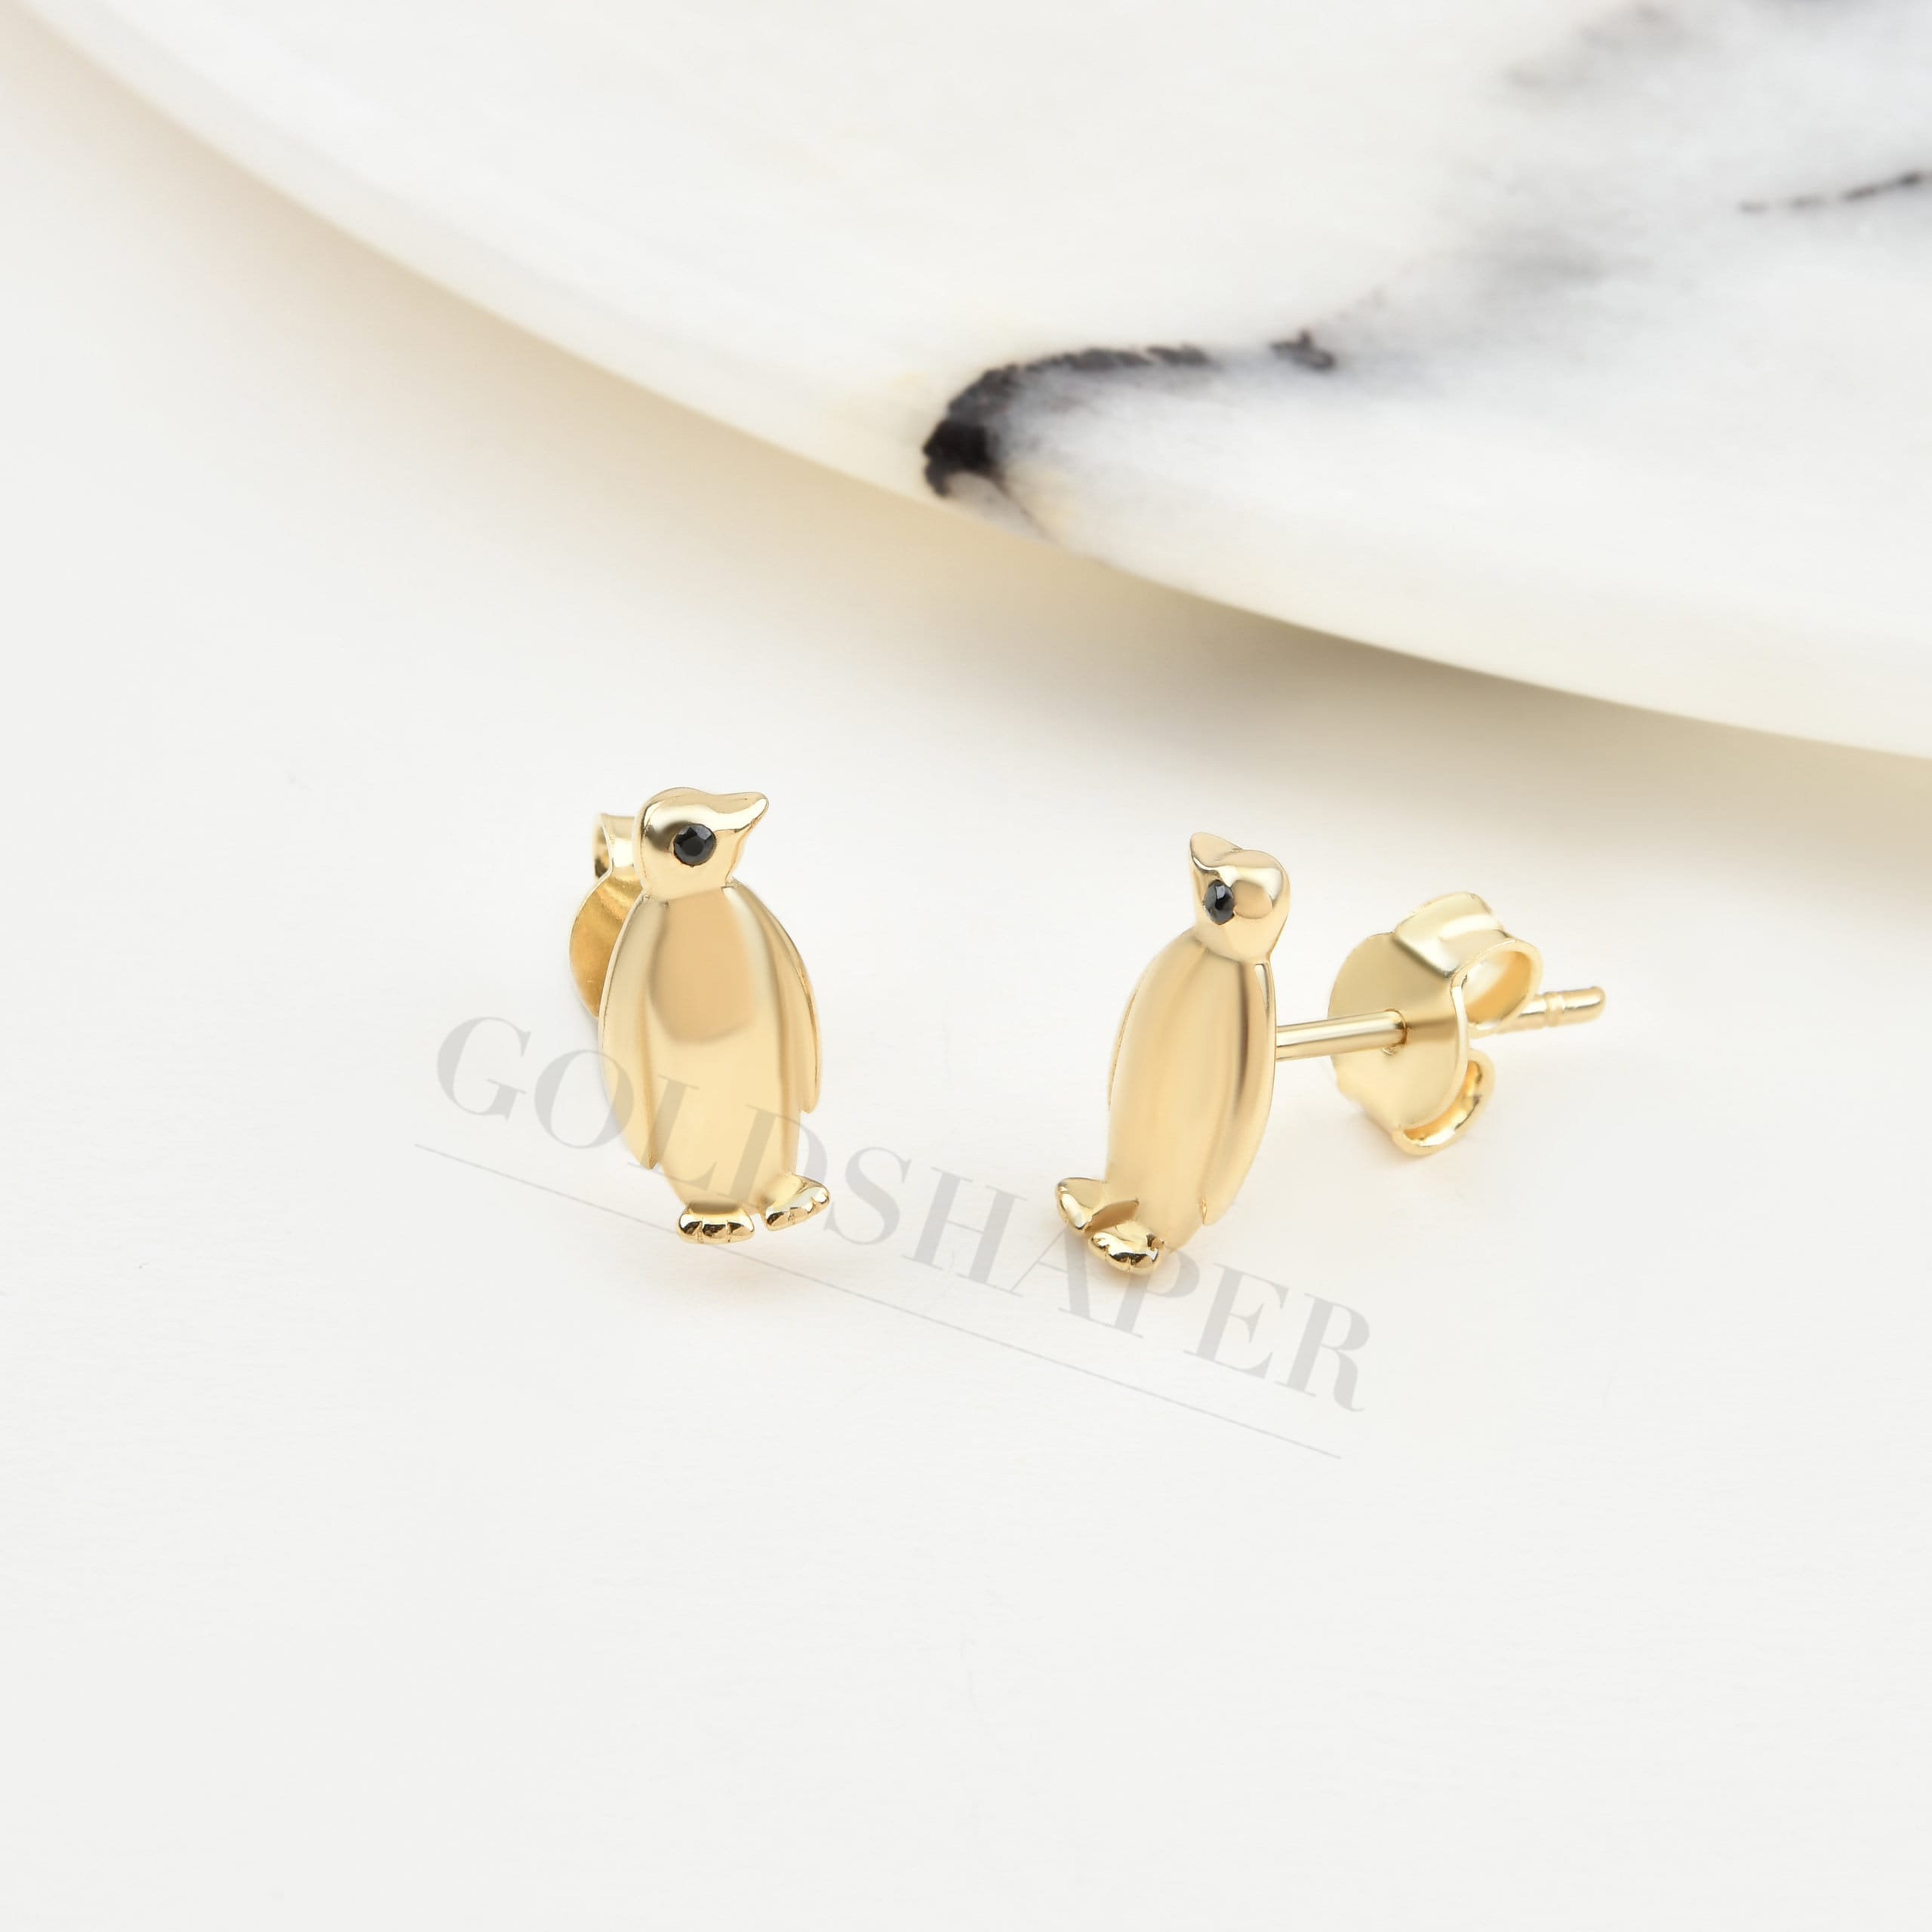 Penguin Earrings, 14K Solid Gold Earring, Animal Gift For Her, Bridesmaid Gift, Birthday Christmas Gift